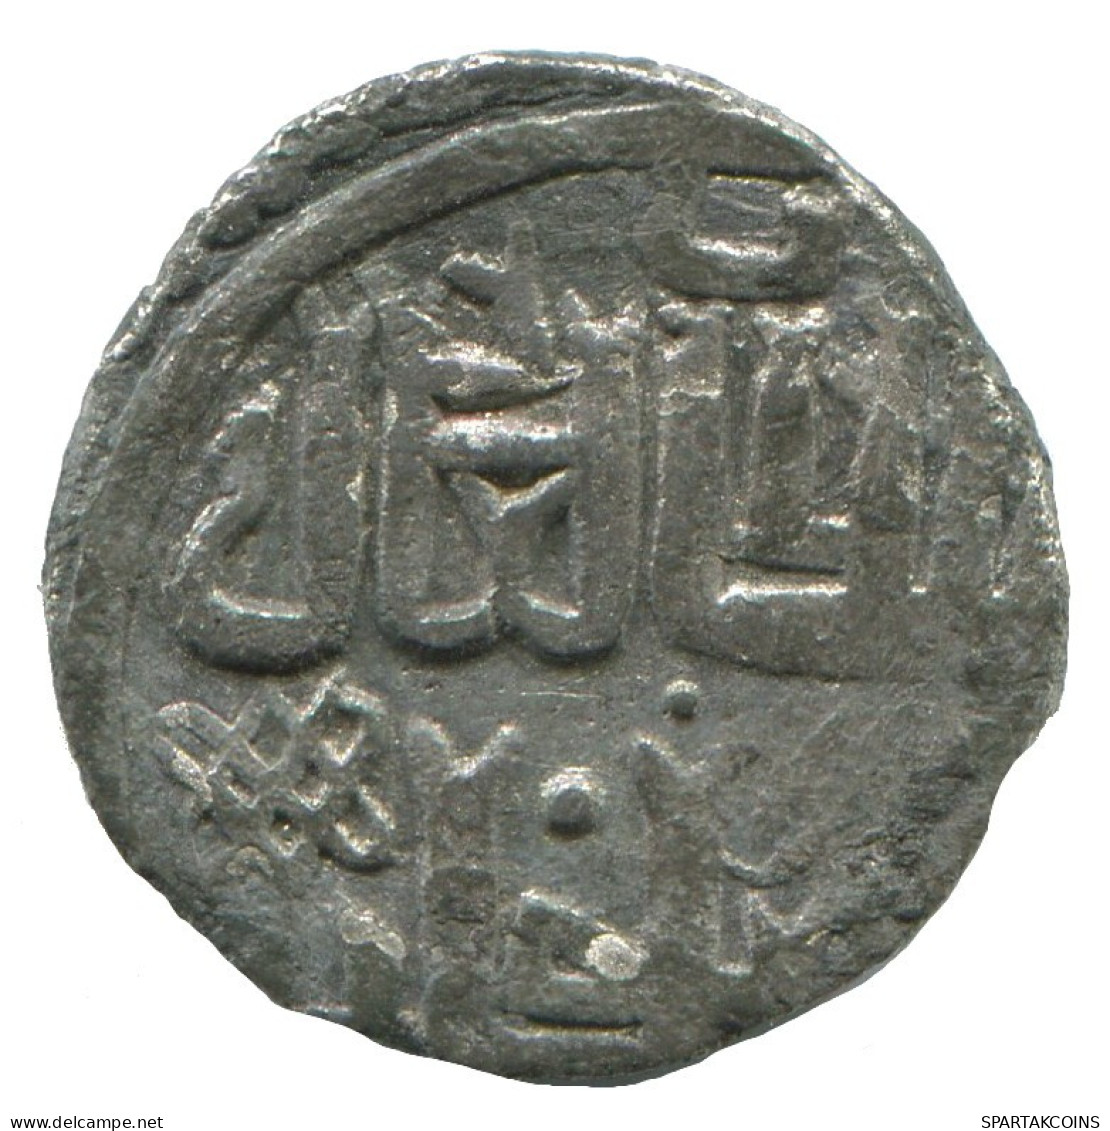 GOLDEN HORDE Silver Dirham Medieval Islamic Coin 1.4g/16mm #NNN2023.8.D.A - Islamic